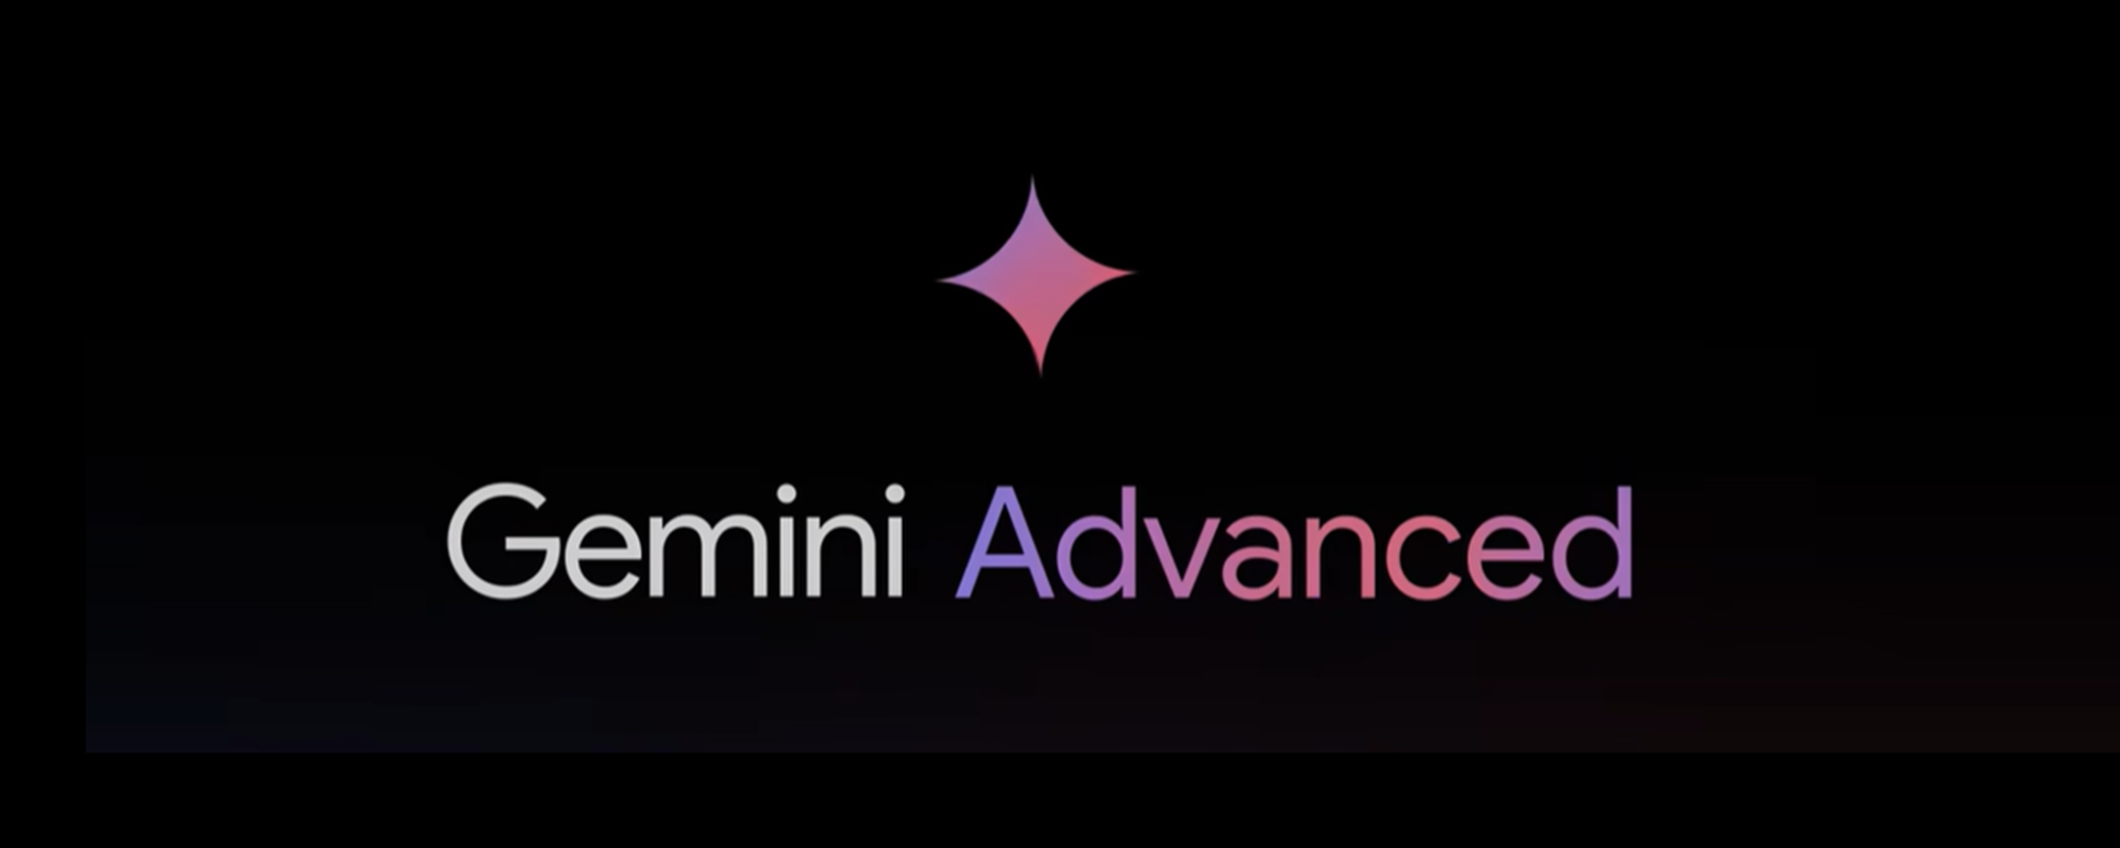 Gemini Advanced: i reali vantaggi dell'upgrade alla versione avanzata